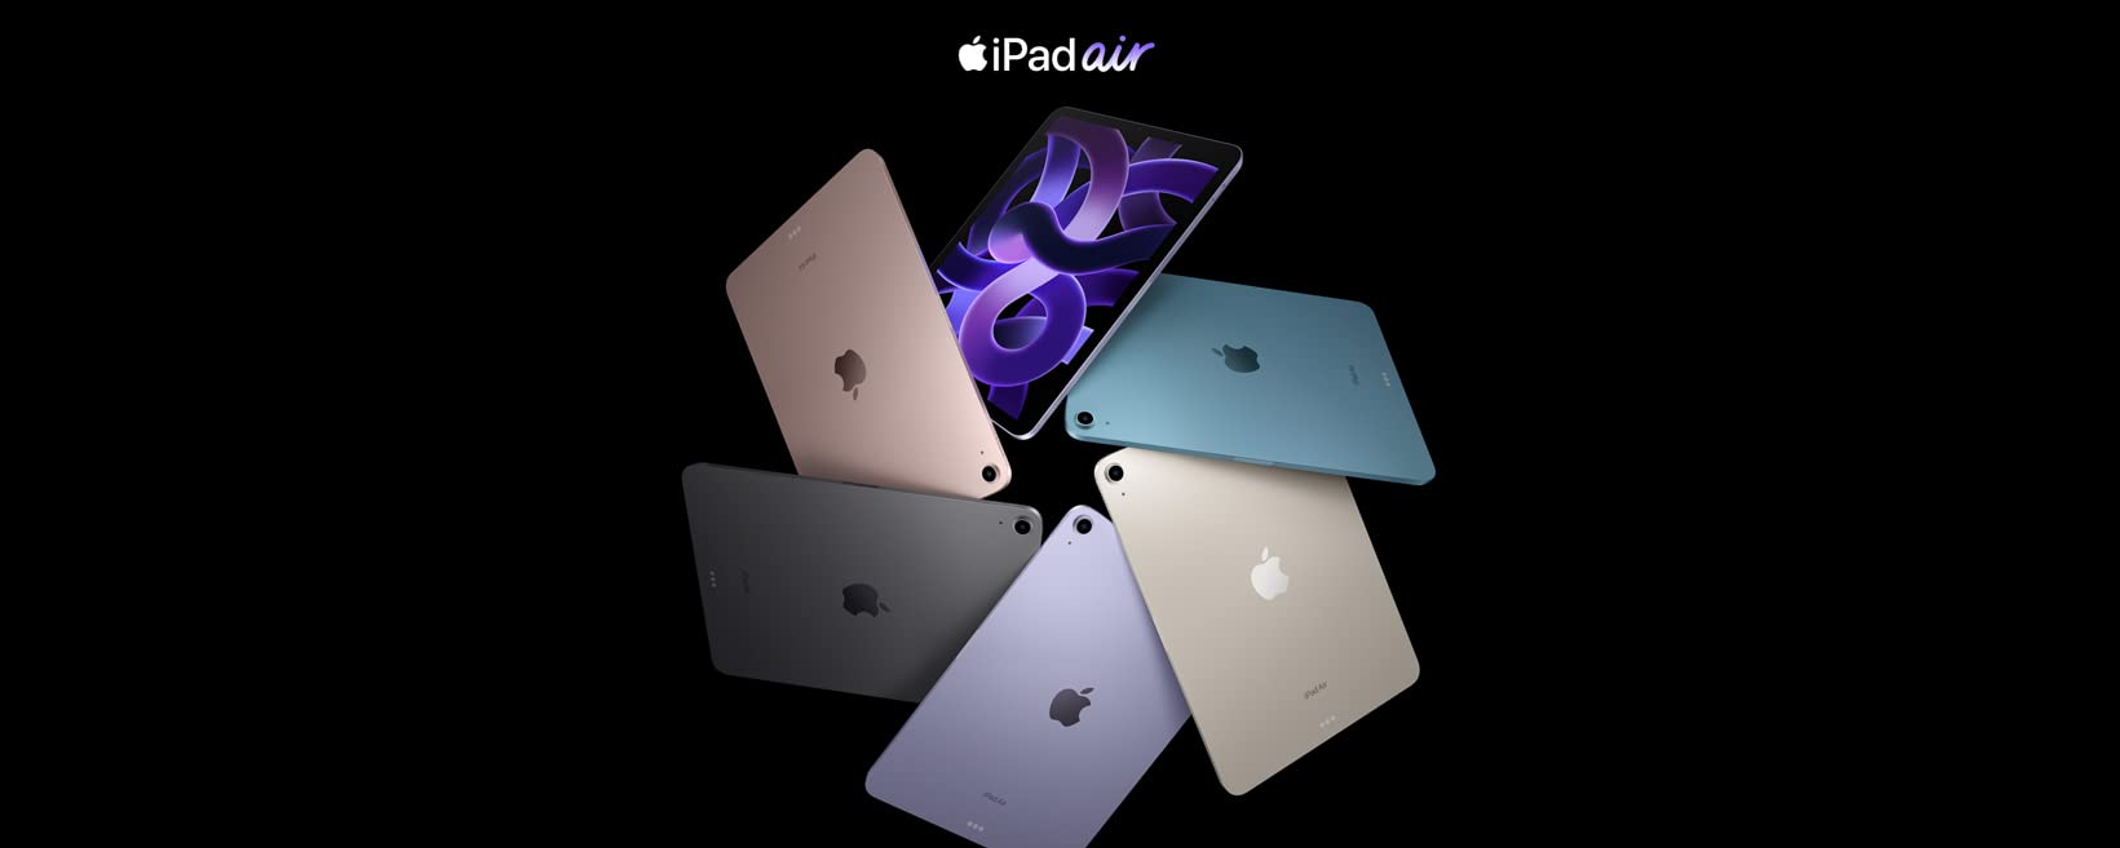 iPad Air: lo sconto di 130€ su Amazon è ormai agli sgoccioli